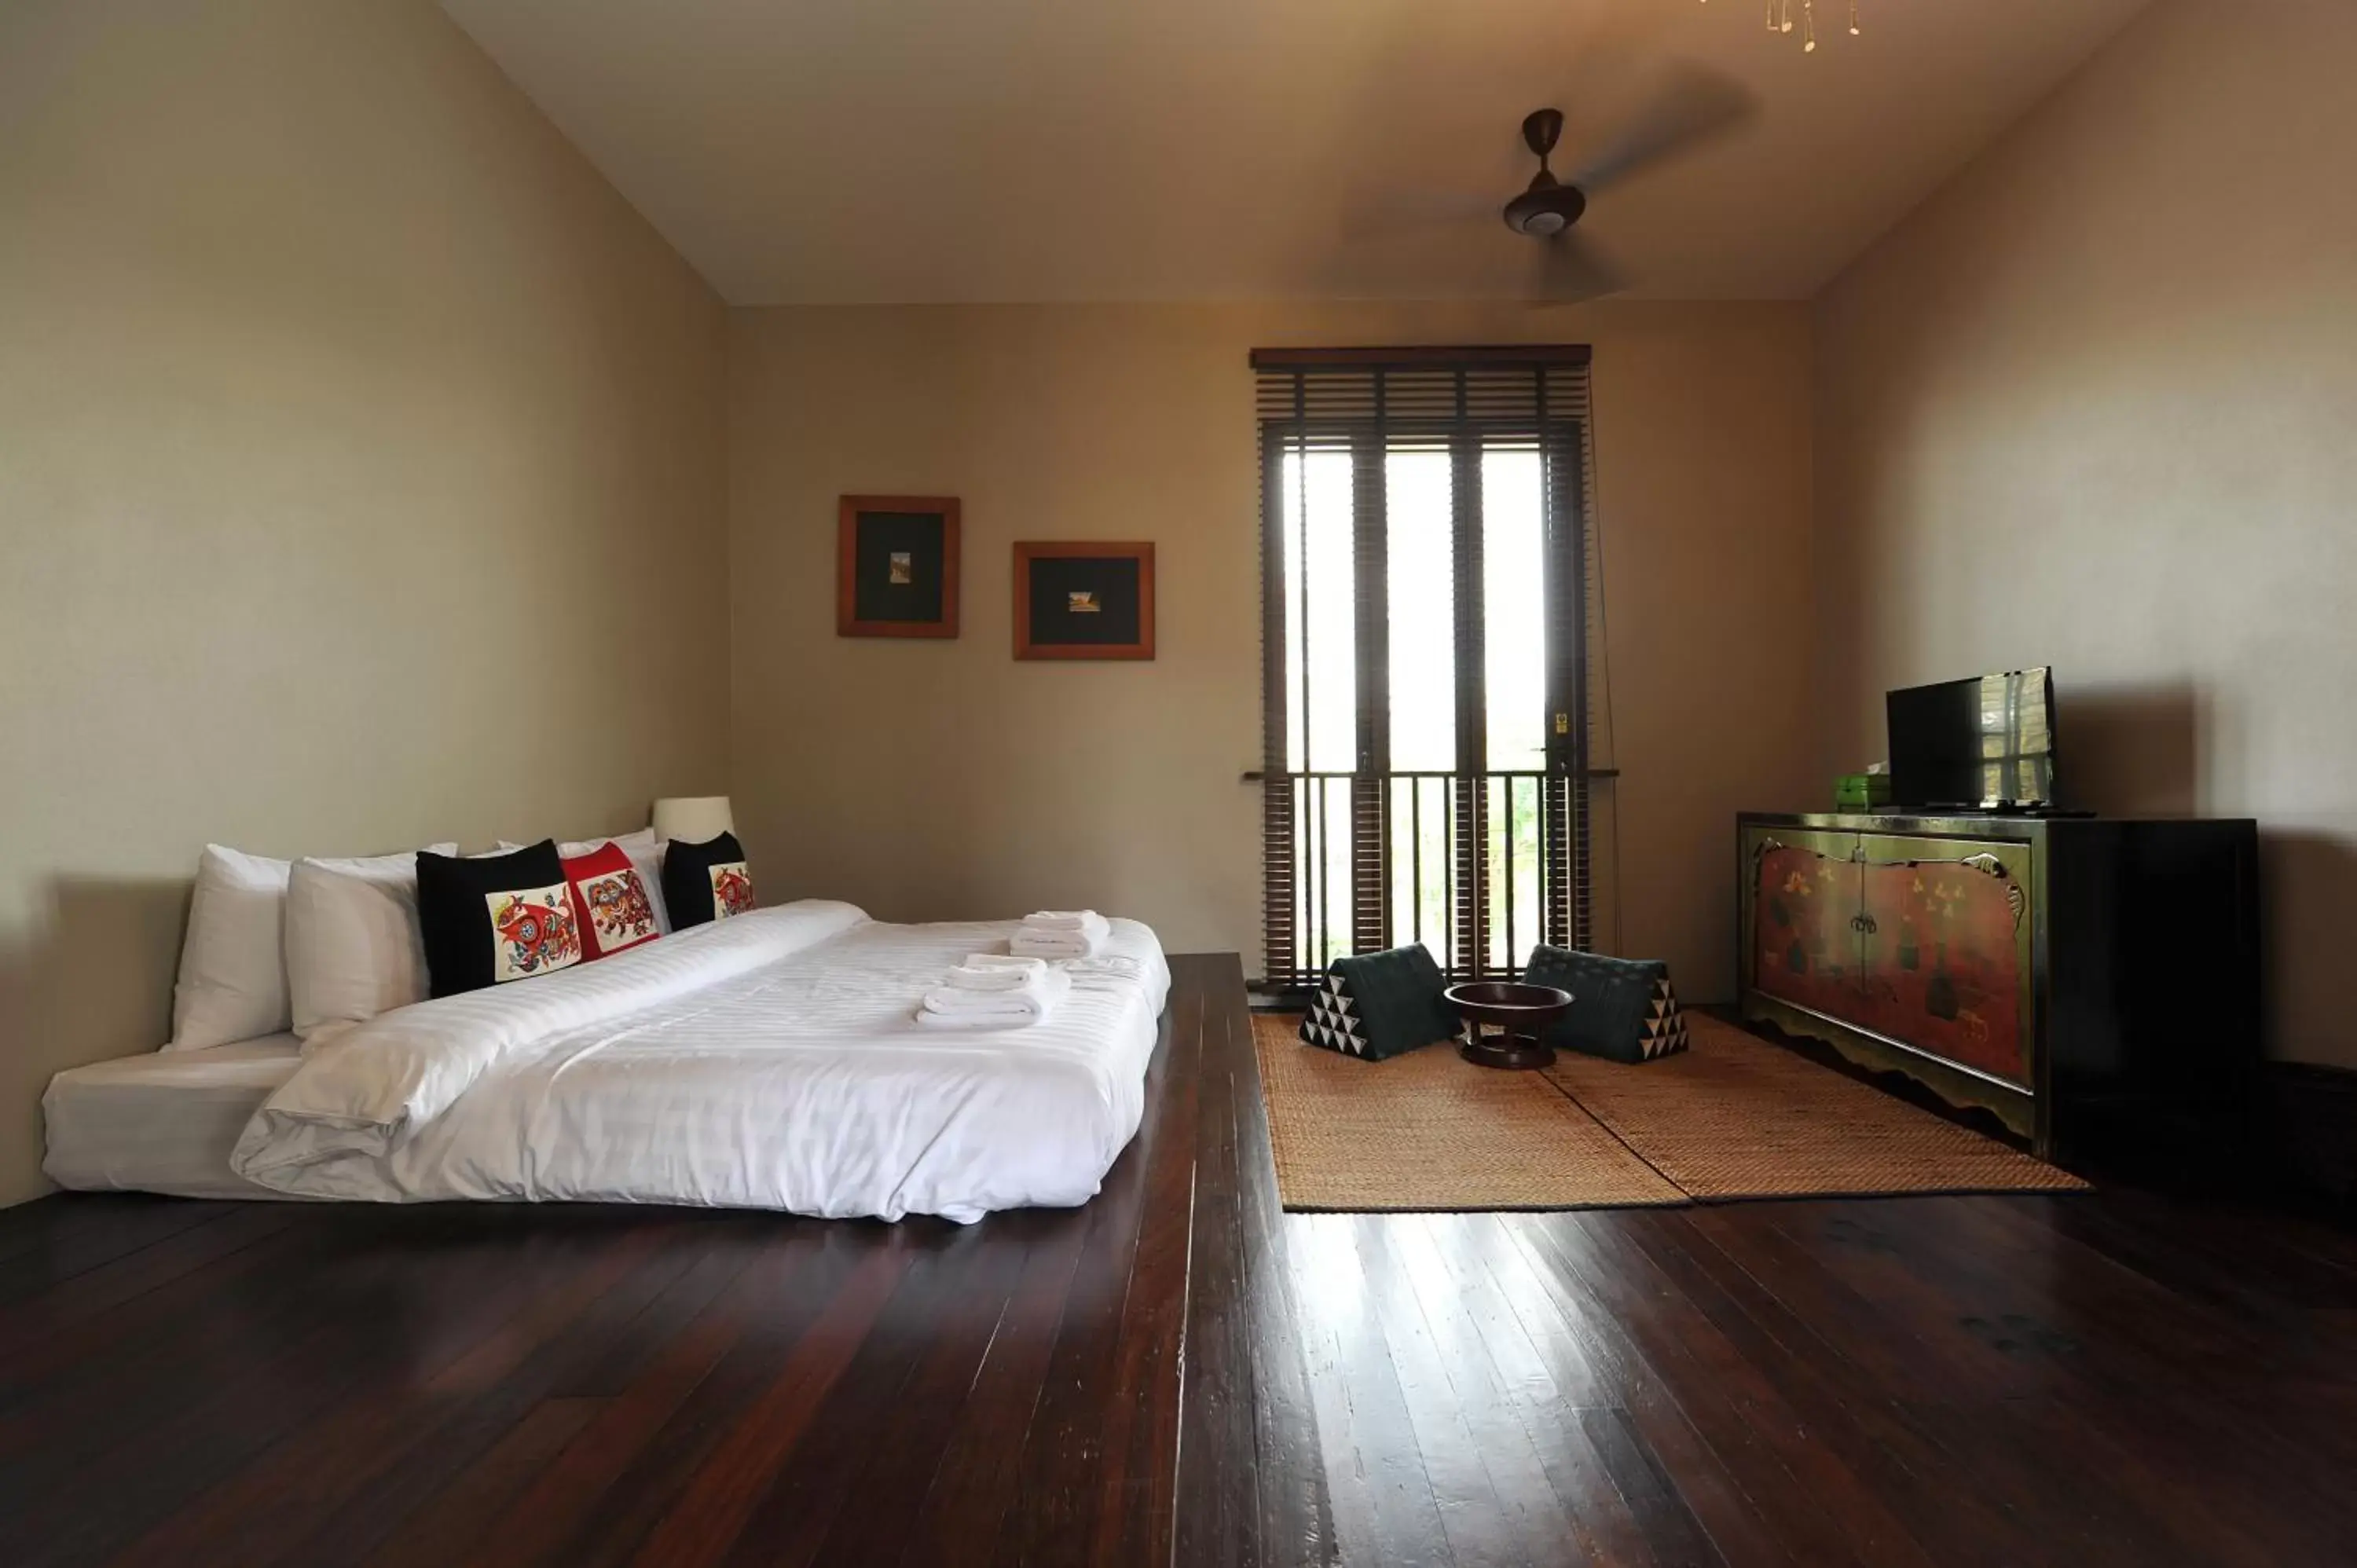 Bed, Room Photo in VILLA BANGKOK formerly VILLA PHRA SUMEN